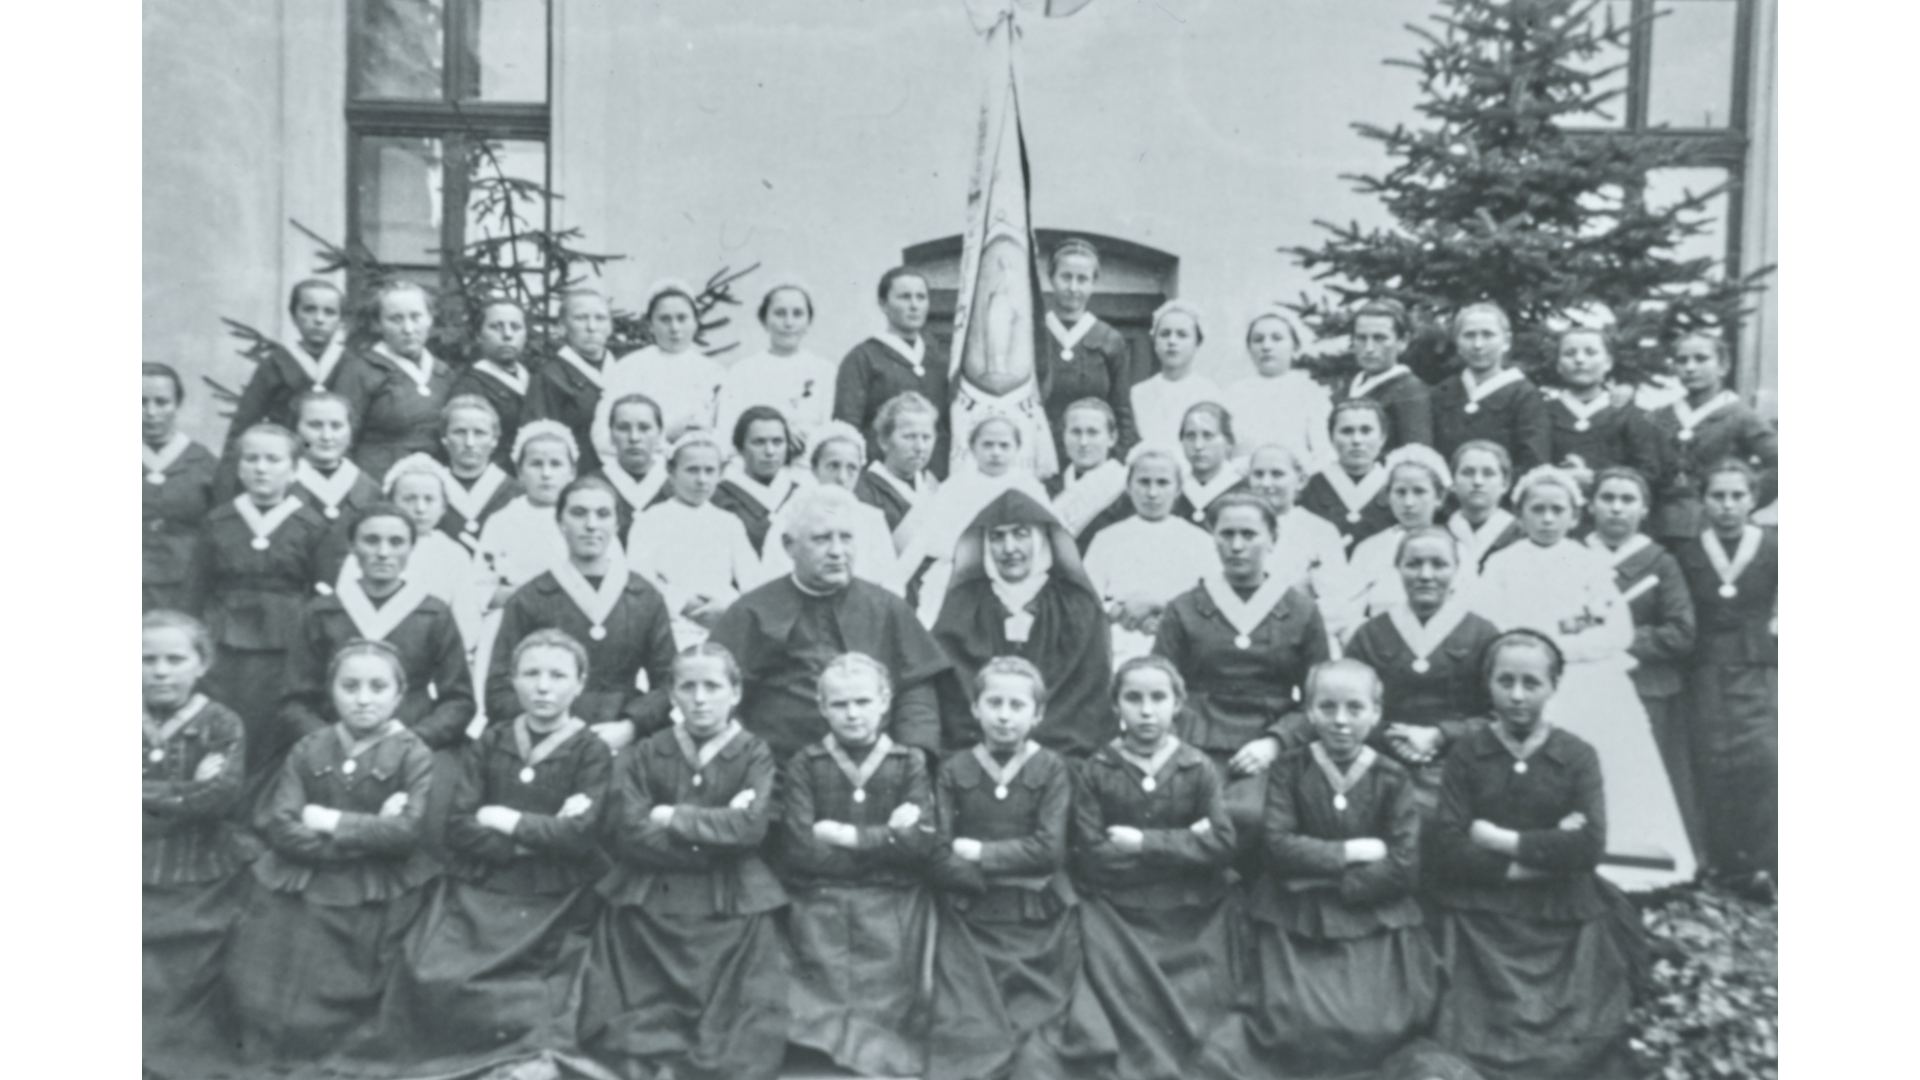 Marianische Kongregation (Kath. Mädchenverein), 1930er Jahre. Foto: Archiv Arme Schulschwestern